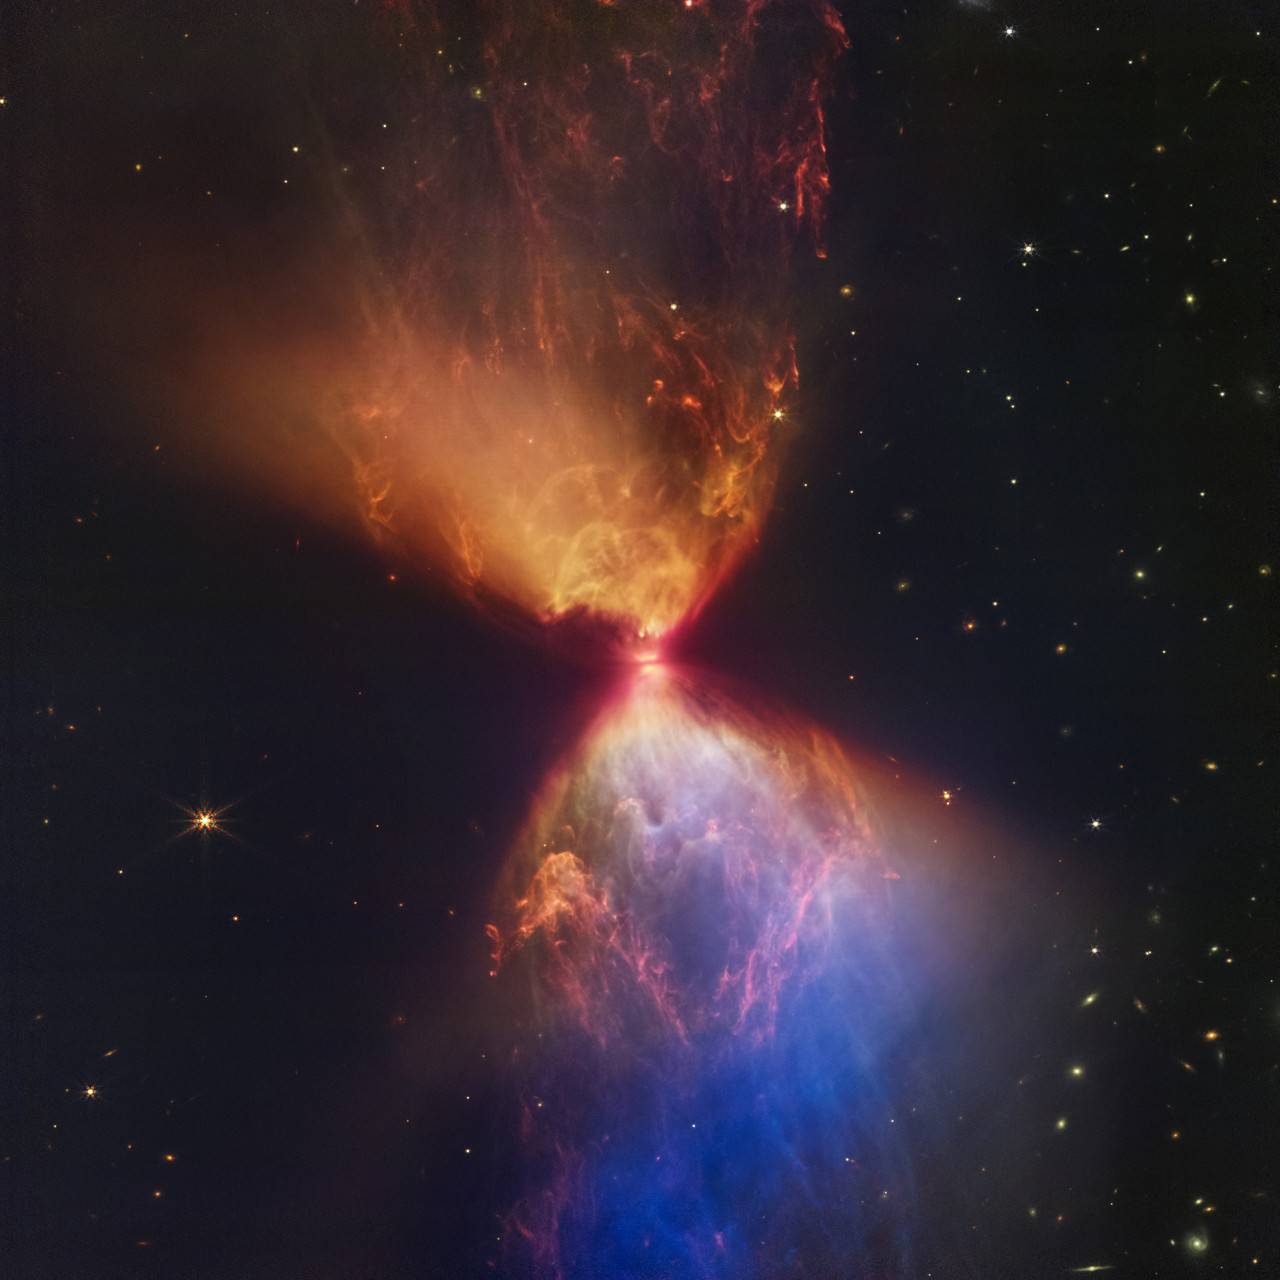 Telescopio espacial James Webb detecta galaxias tempranas